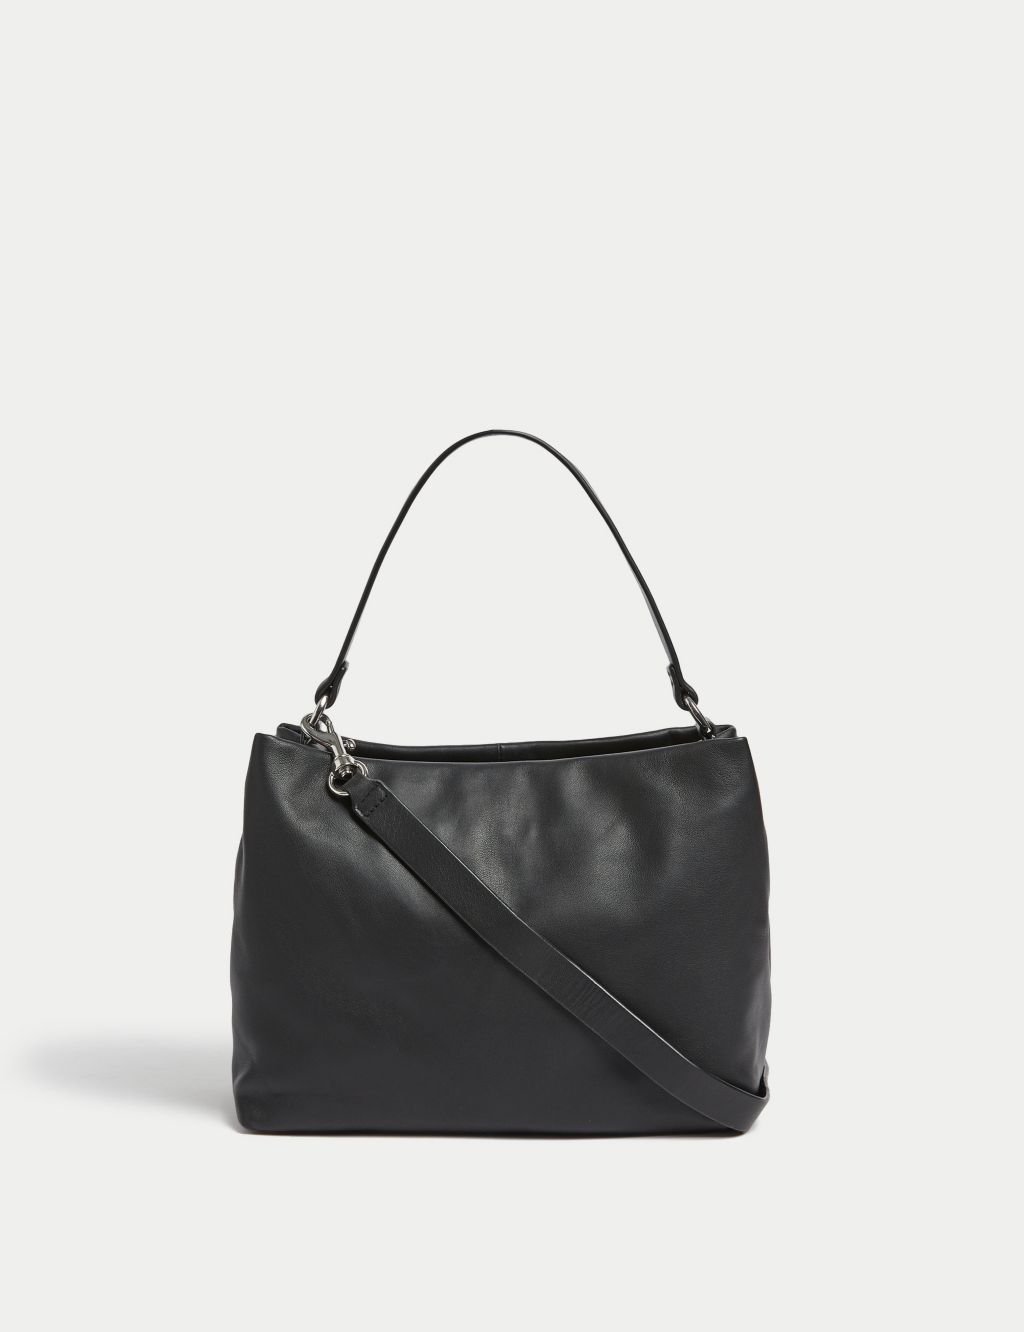 Leather Top Handle Shoulder Bag image 1